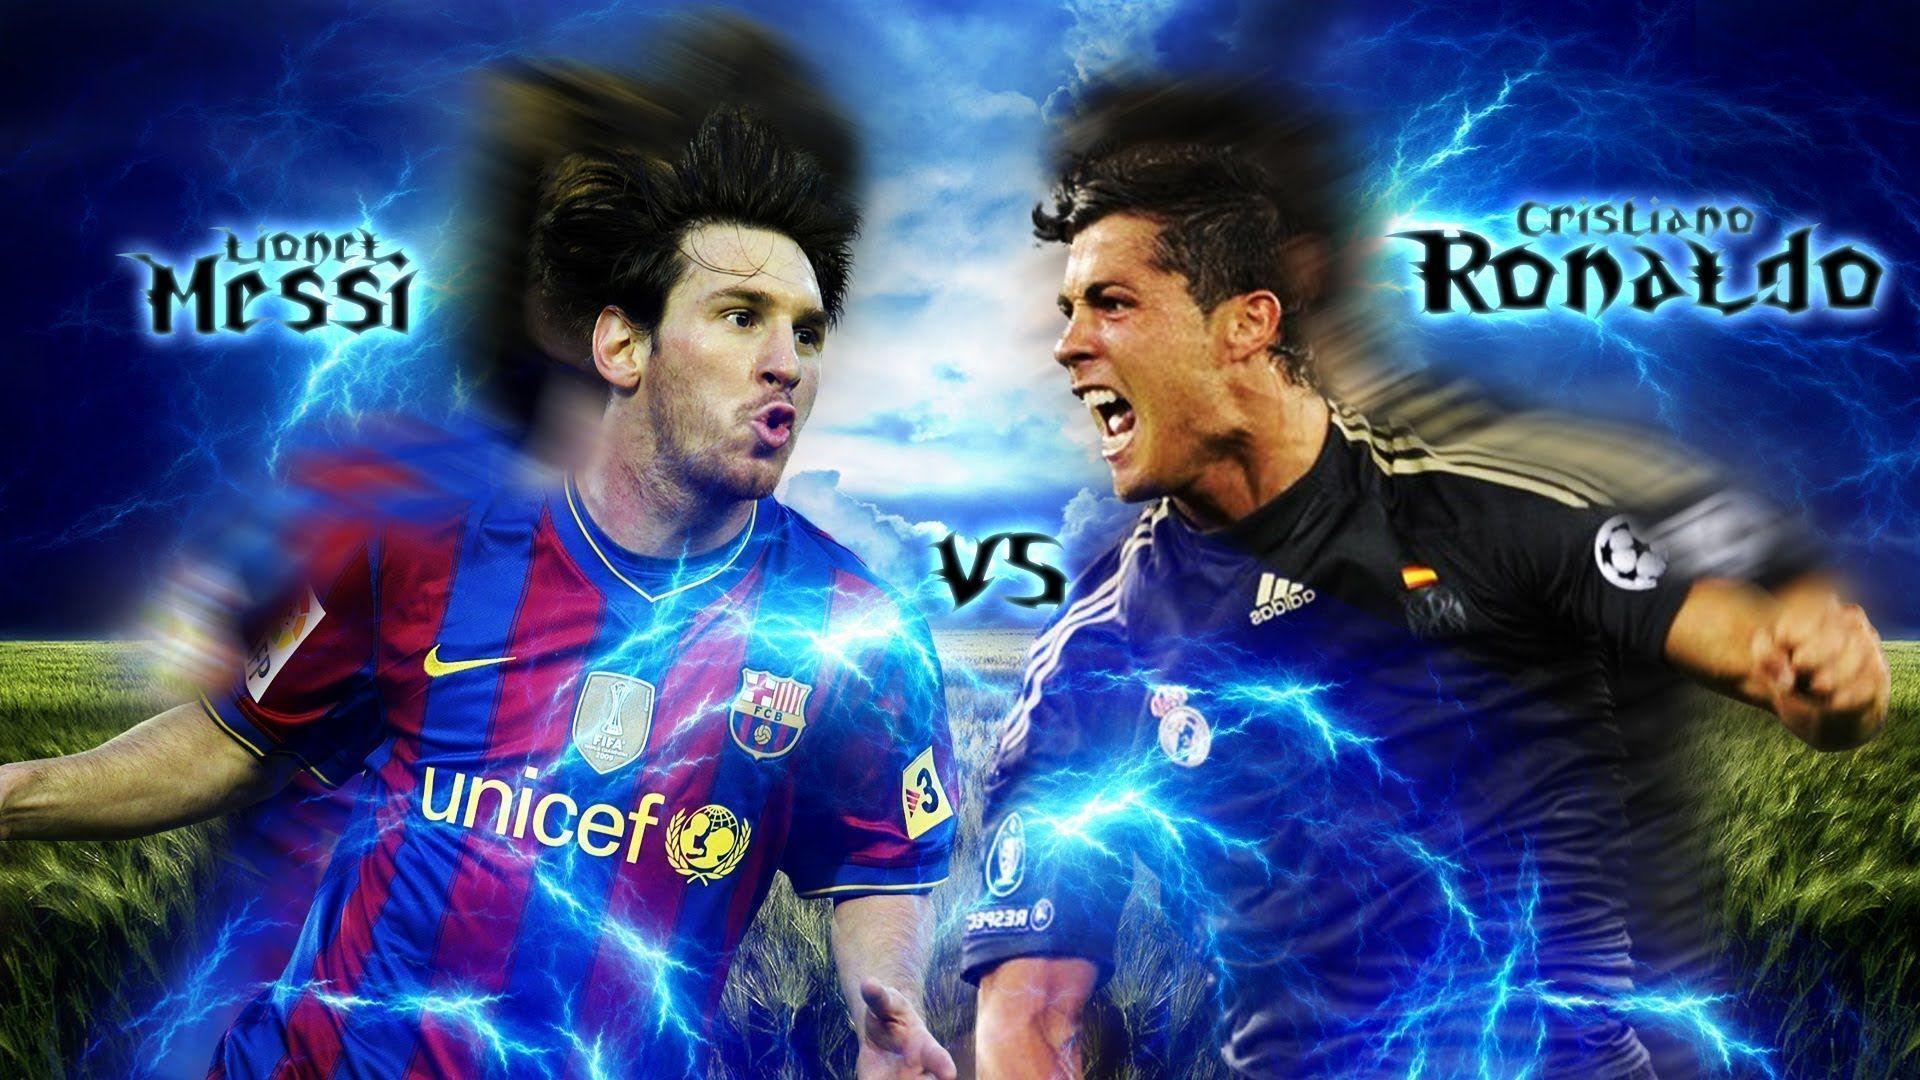 Cristiano Ronaldo vs Lionel Messi 2015 The Movie